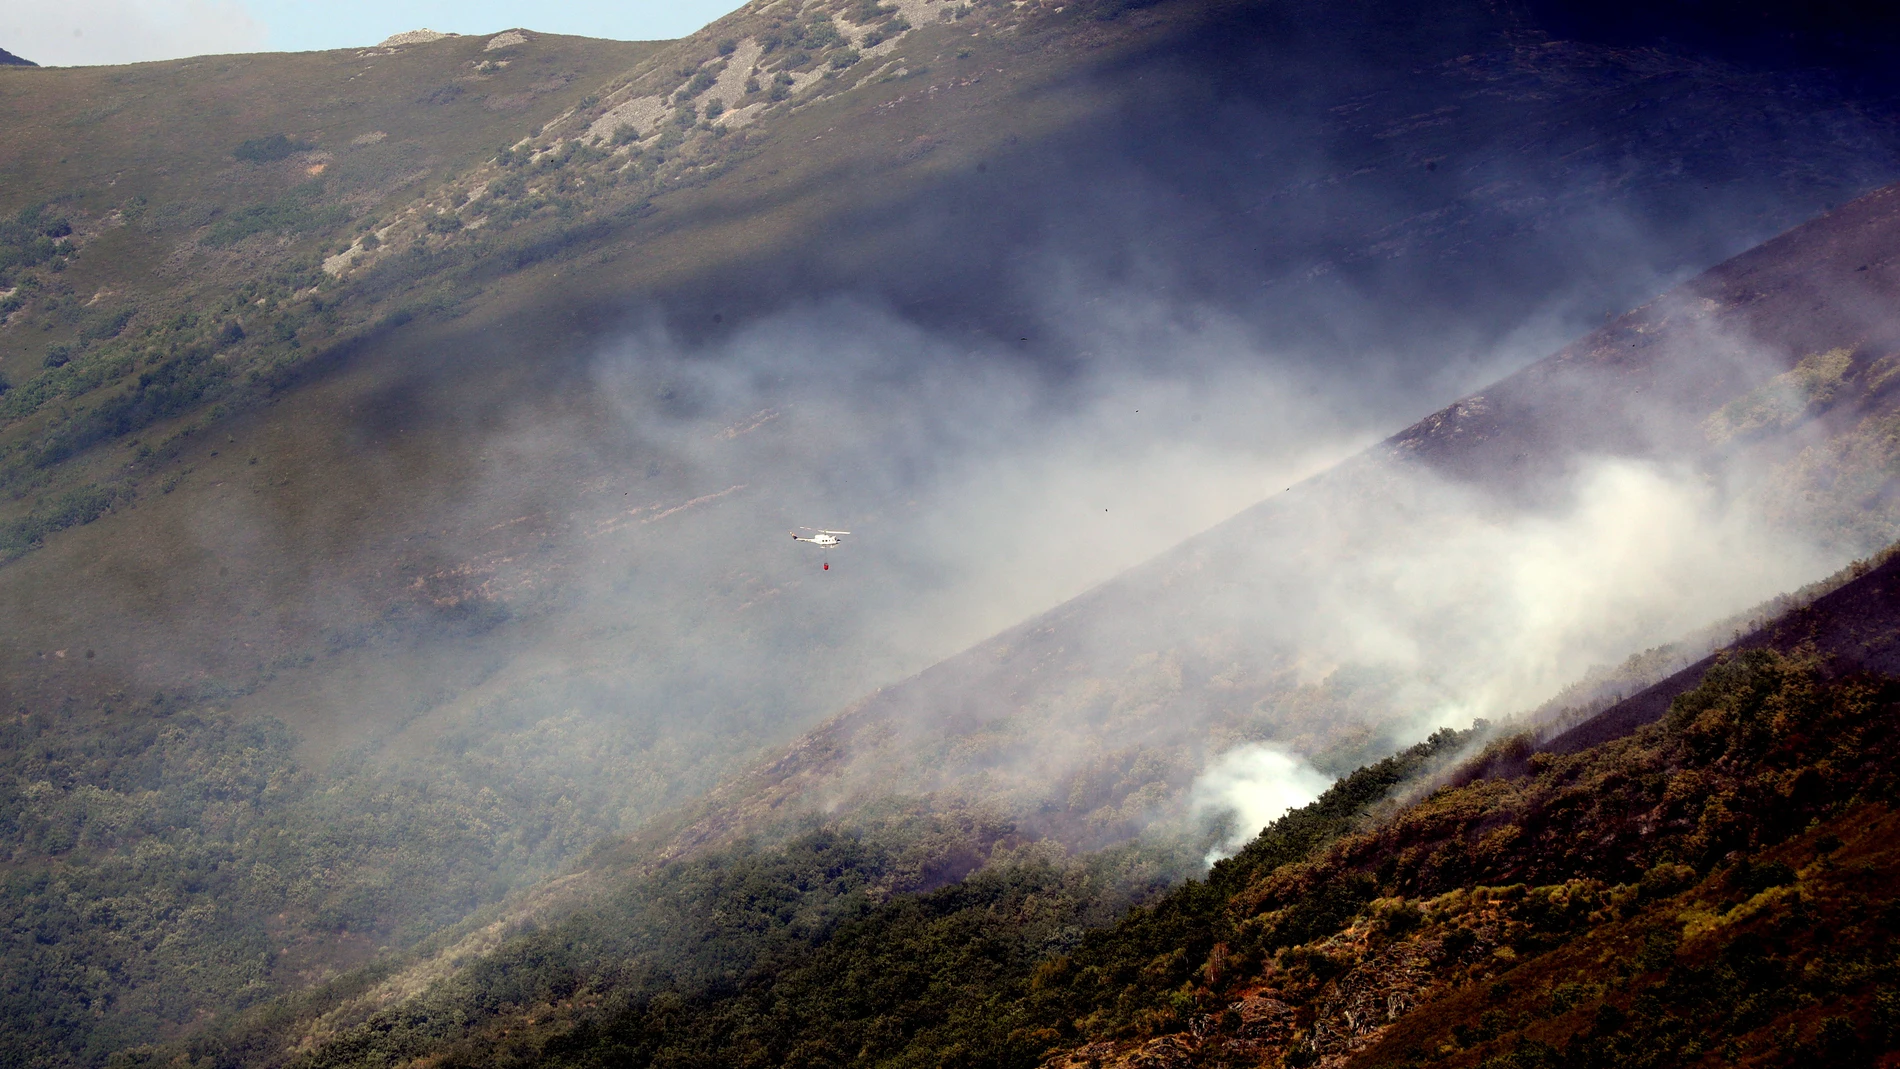 Incendio forestal declarado en Igueña (León), en la comarca de El Bierzo el pasado mes de agosto